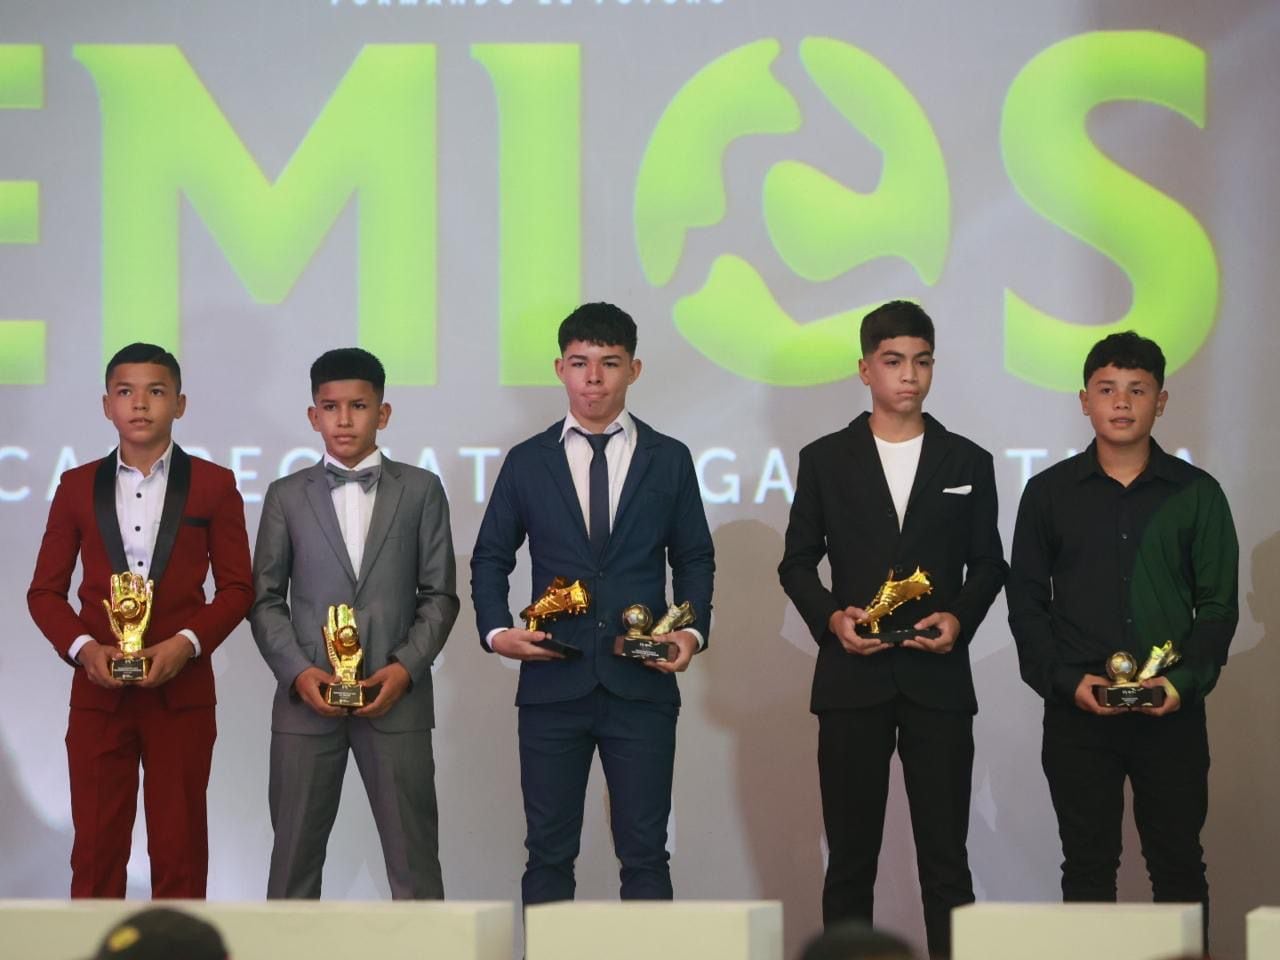 Nilmar Miranda (Alajuelense), Darién Oconitrillo (Santos), Carlos Arguedas (Alajuelense), Darrell Montero (Santos) e Ian Alemán (Sporting) fueron los premiados en la U-13.